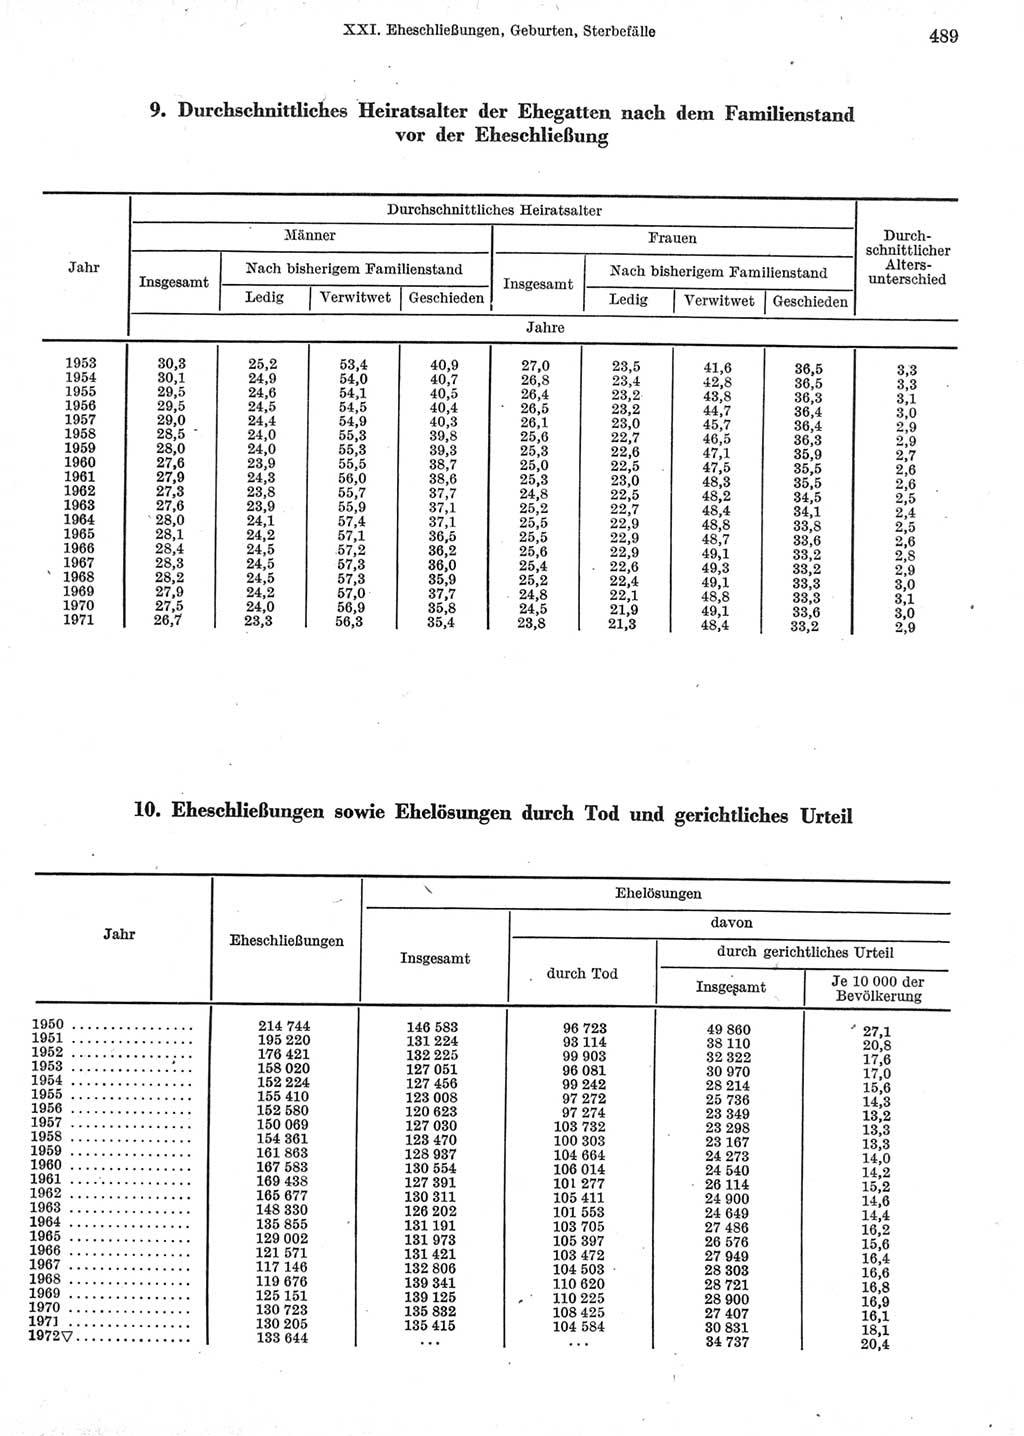 Statistisches Jahrbuch der Deutschen Demokratischen Republik (DDR) 1973, Seite 489 (Stat. Jb. DDR 1973, S. 489)